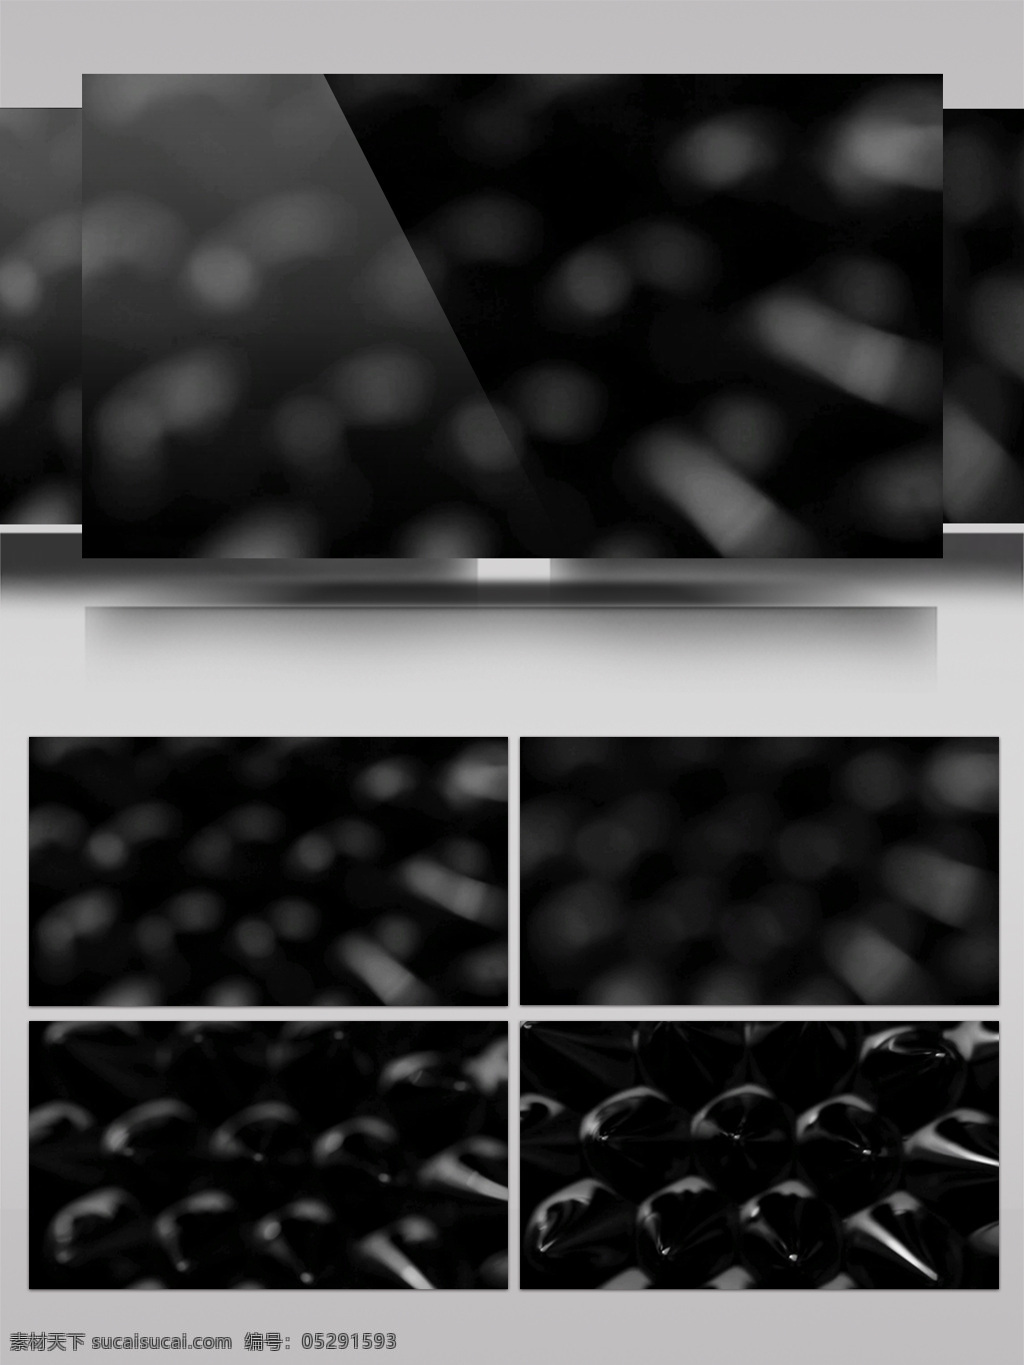 黑色 凸起 例子 视频 黑色粒子 凸起粒子 生活抽象 画面意境 动态抽象 高清视频素材 特效视频素材